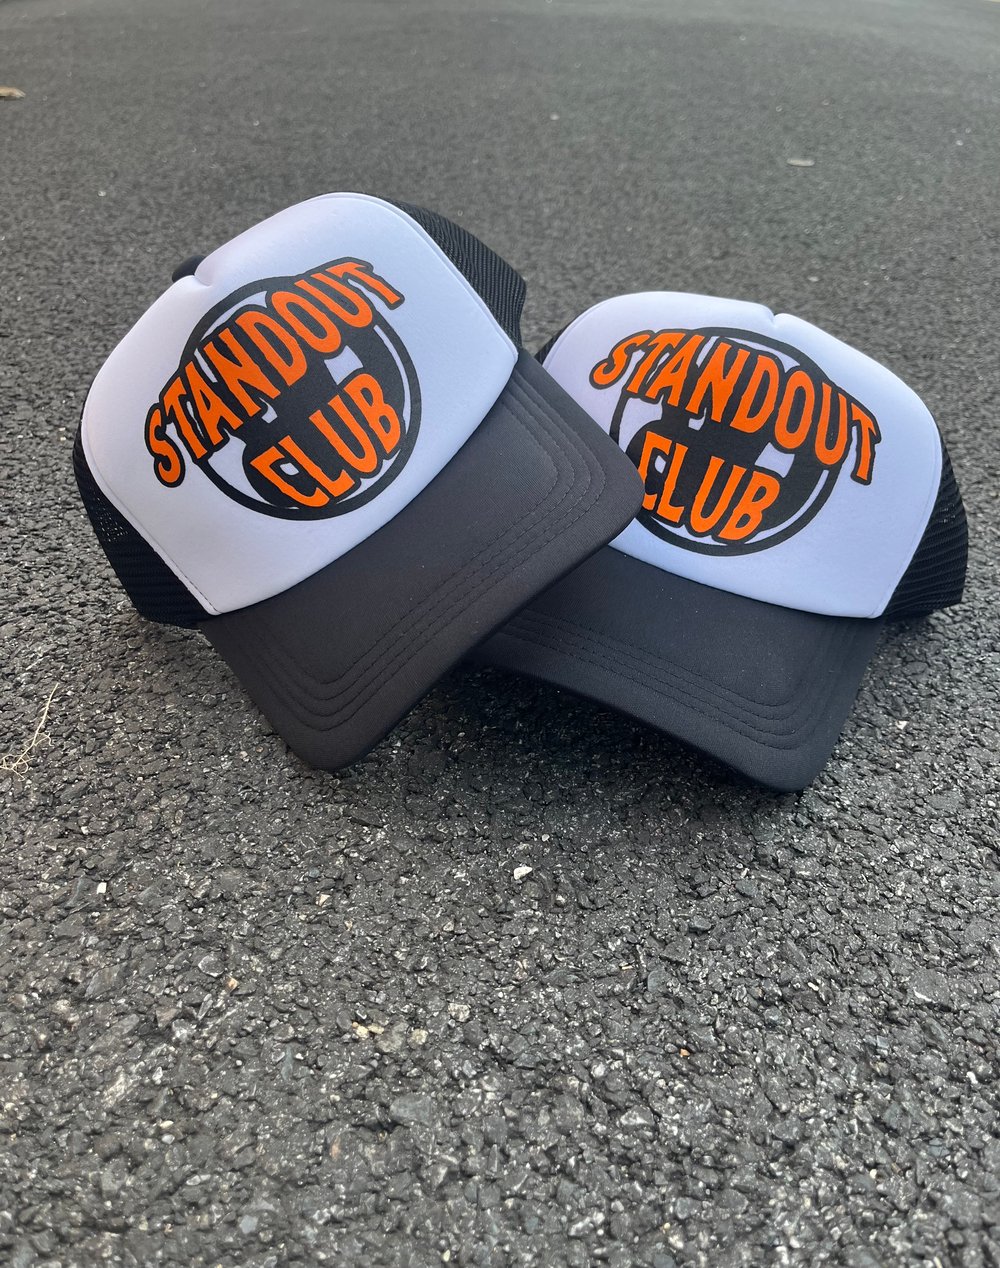 Standout Club Trucker Hat